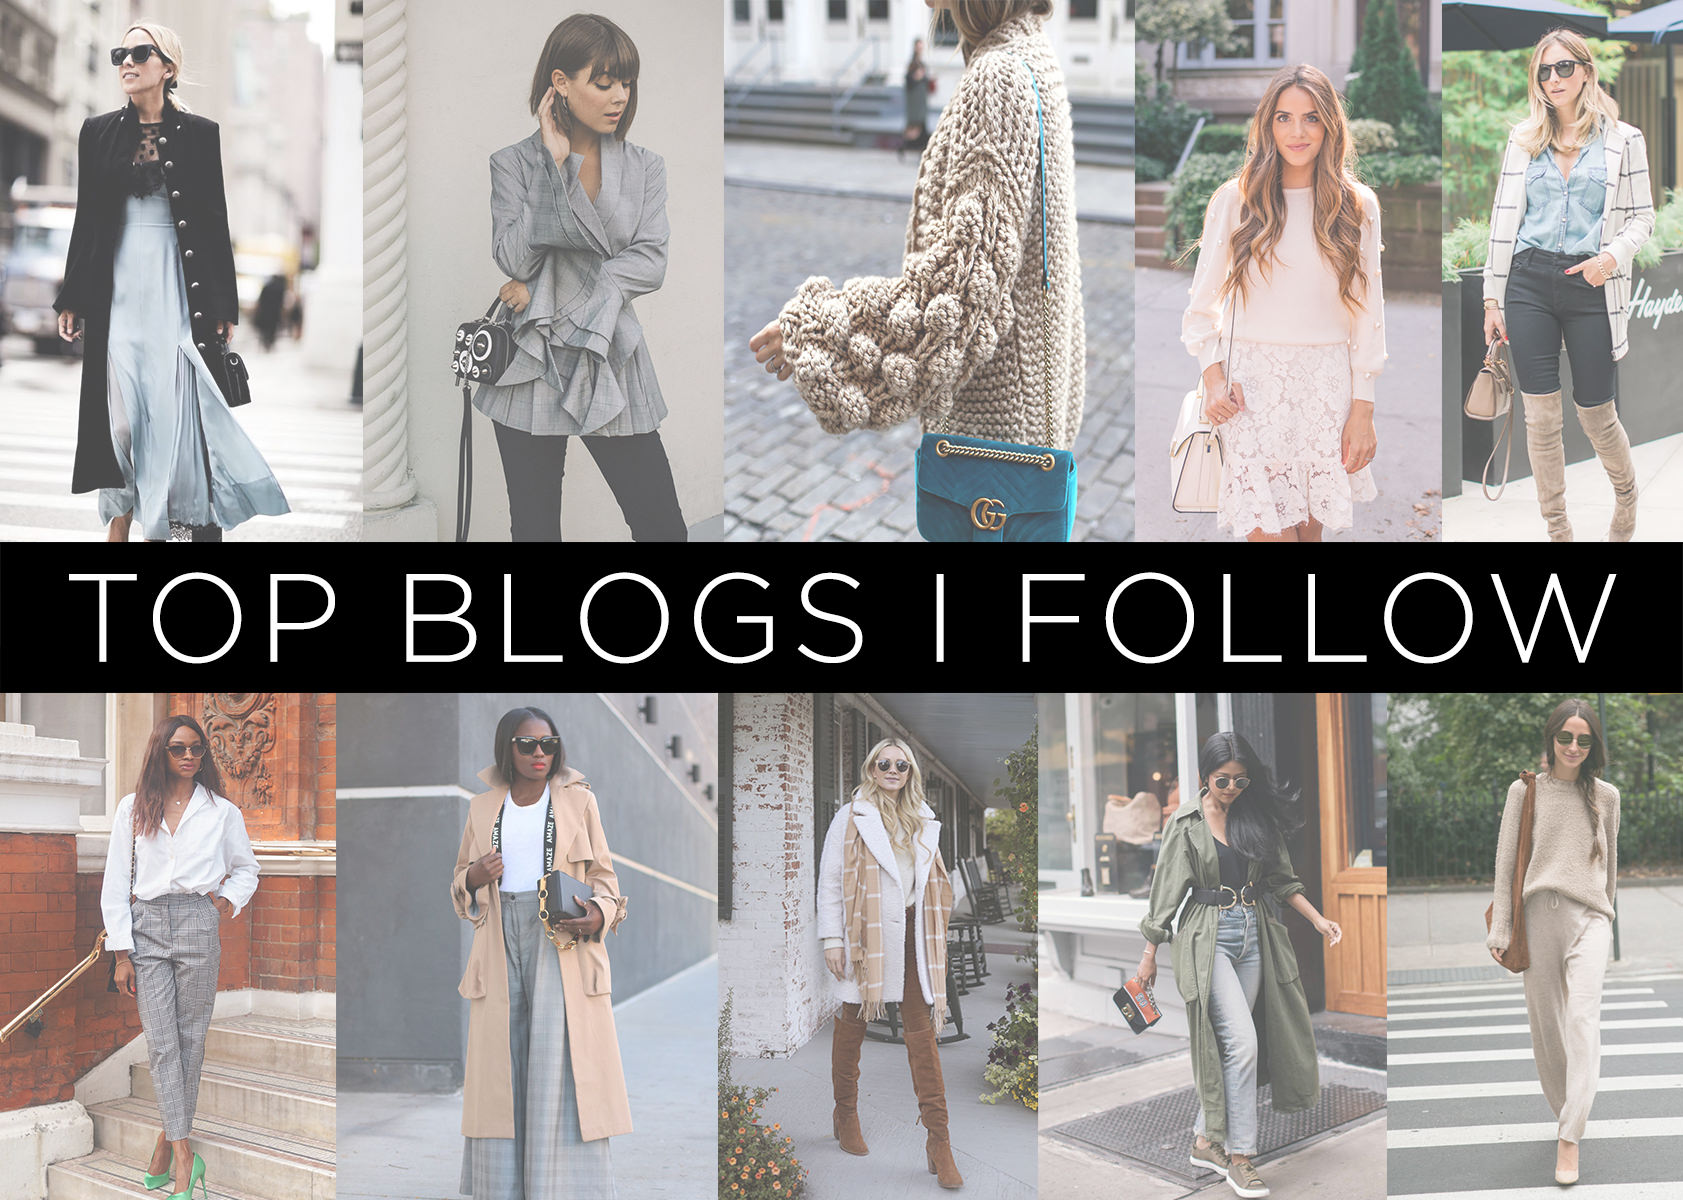 Top 10 Blogs I Follow